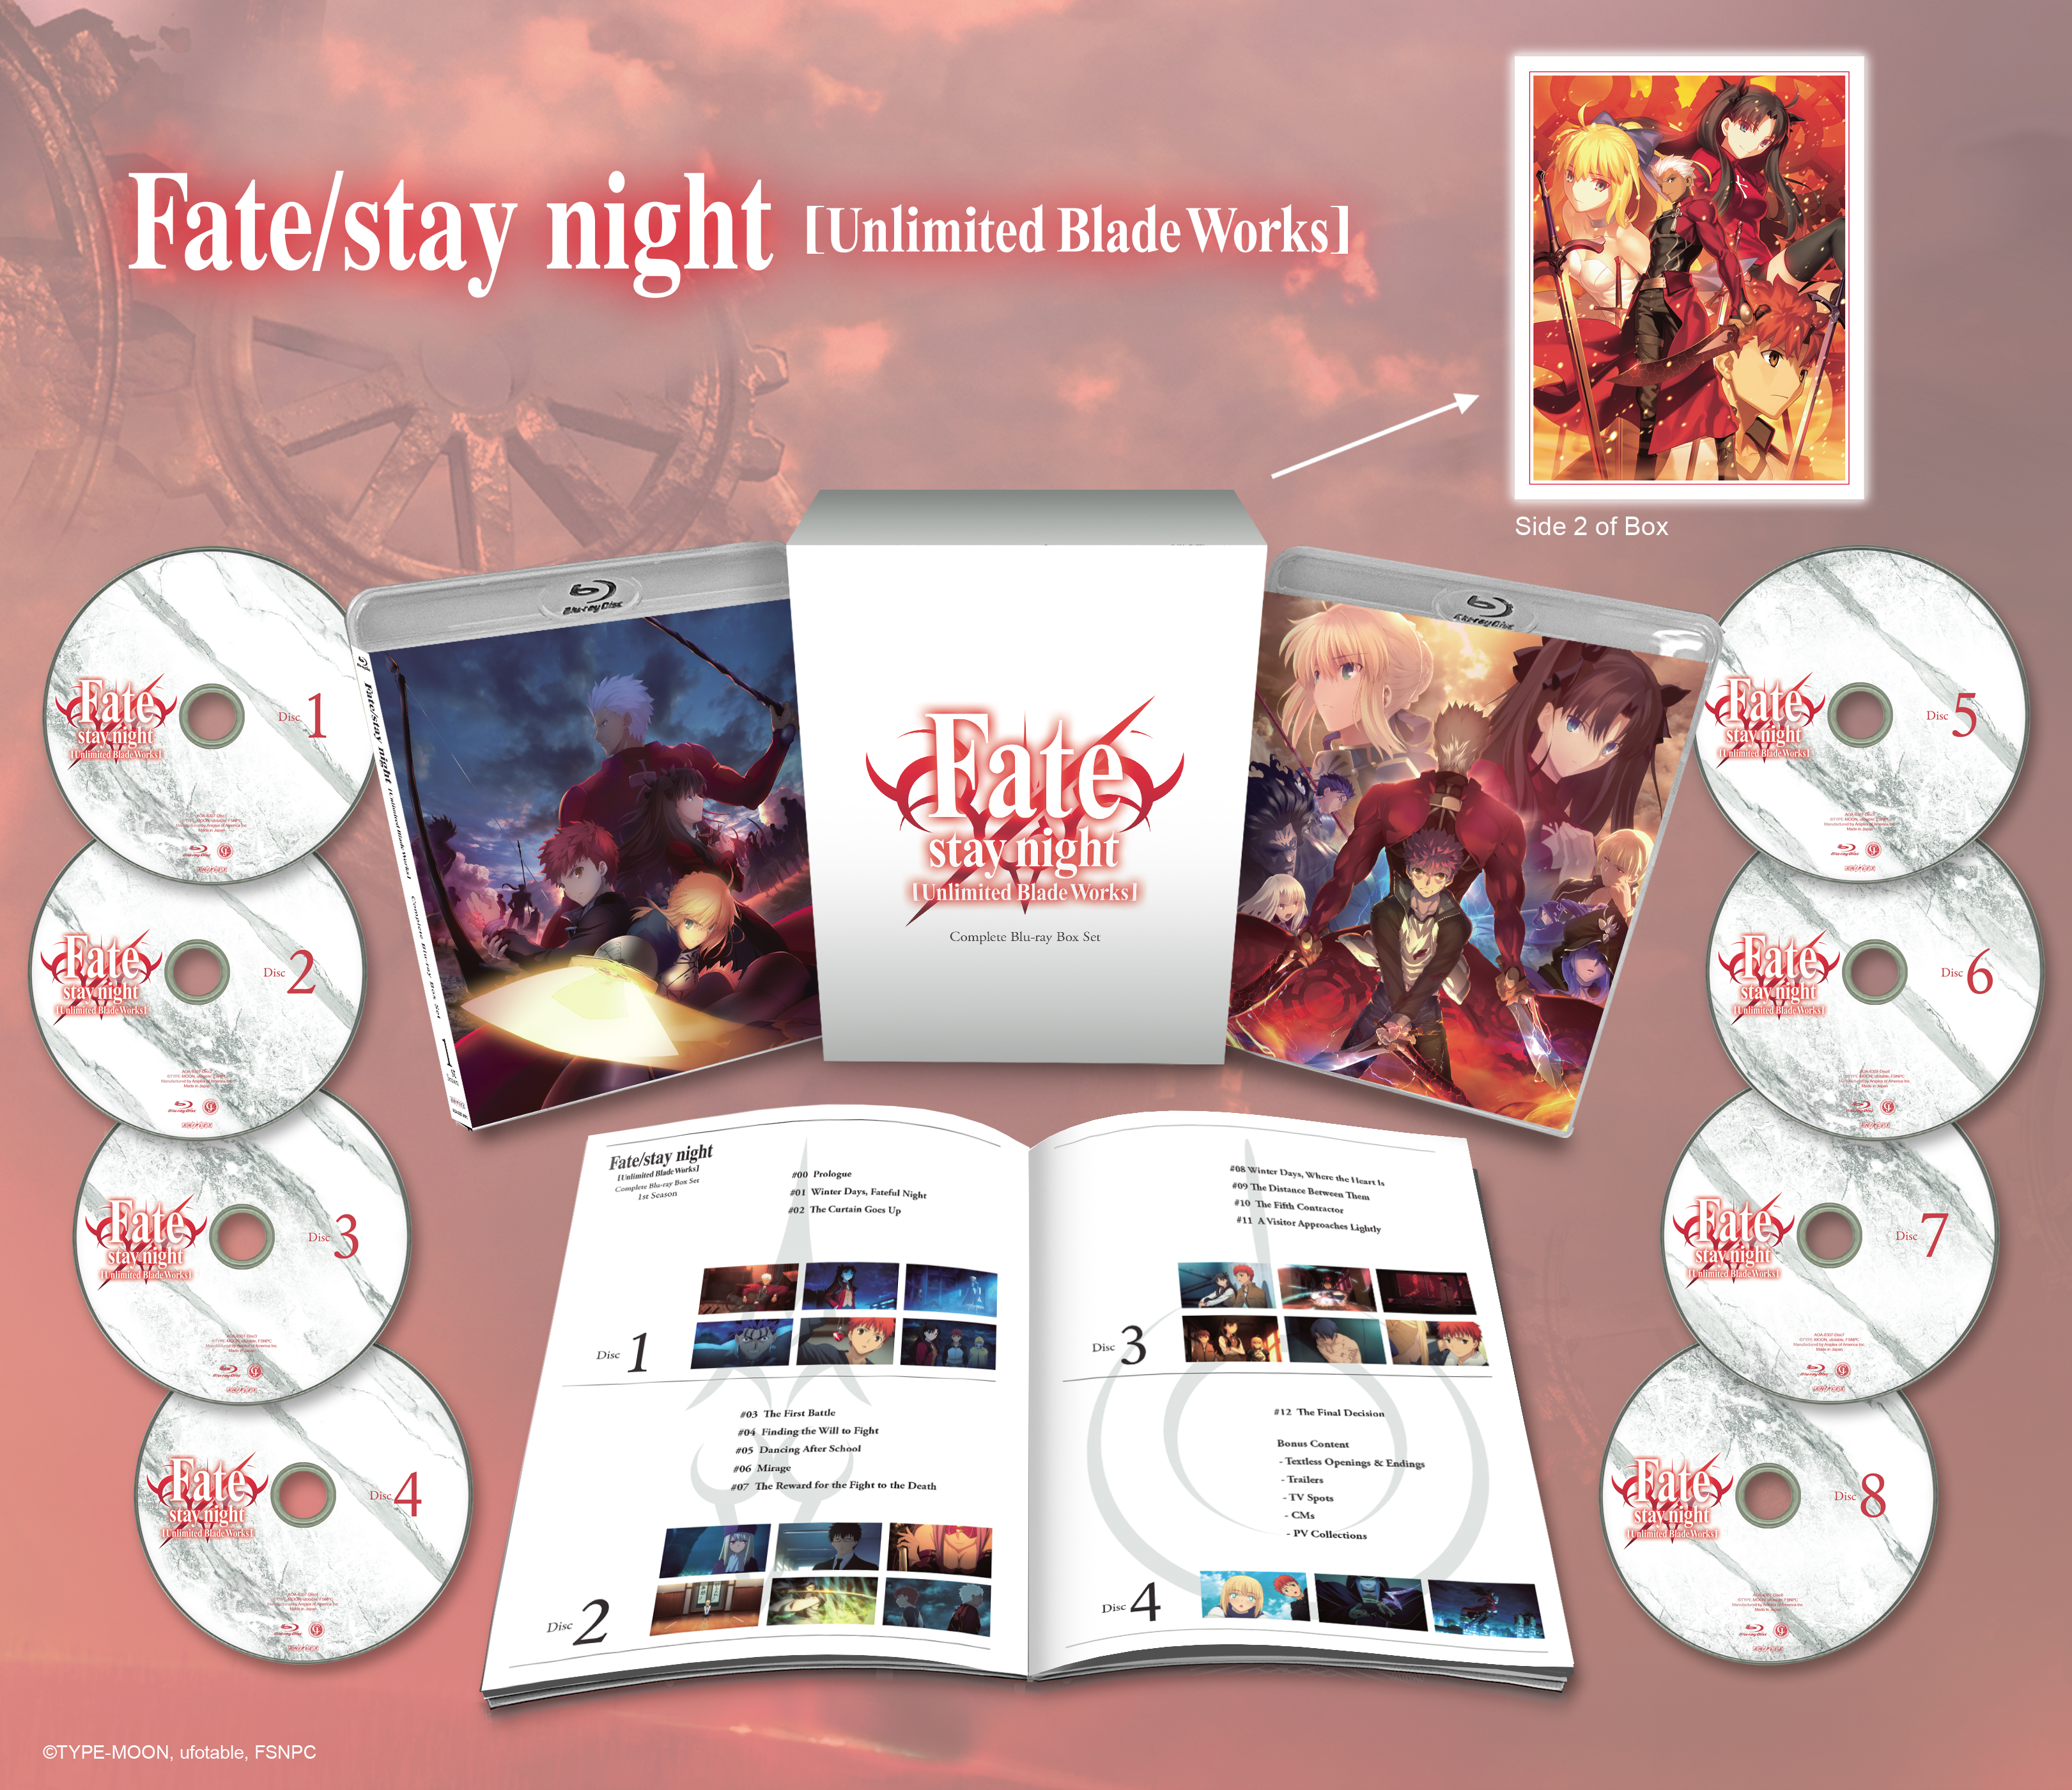 Fate staynight UnlimitedBladeWorks BD